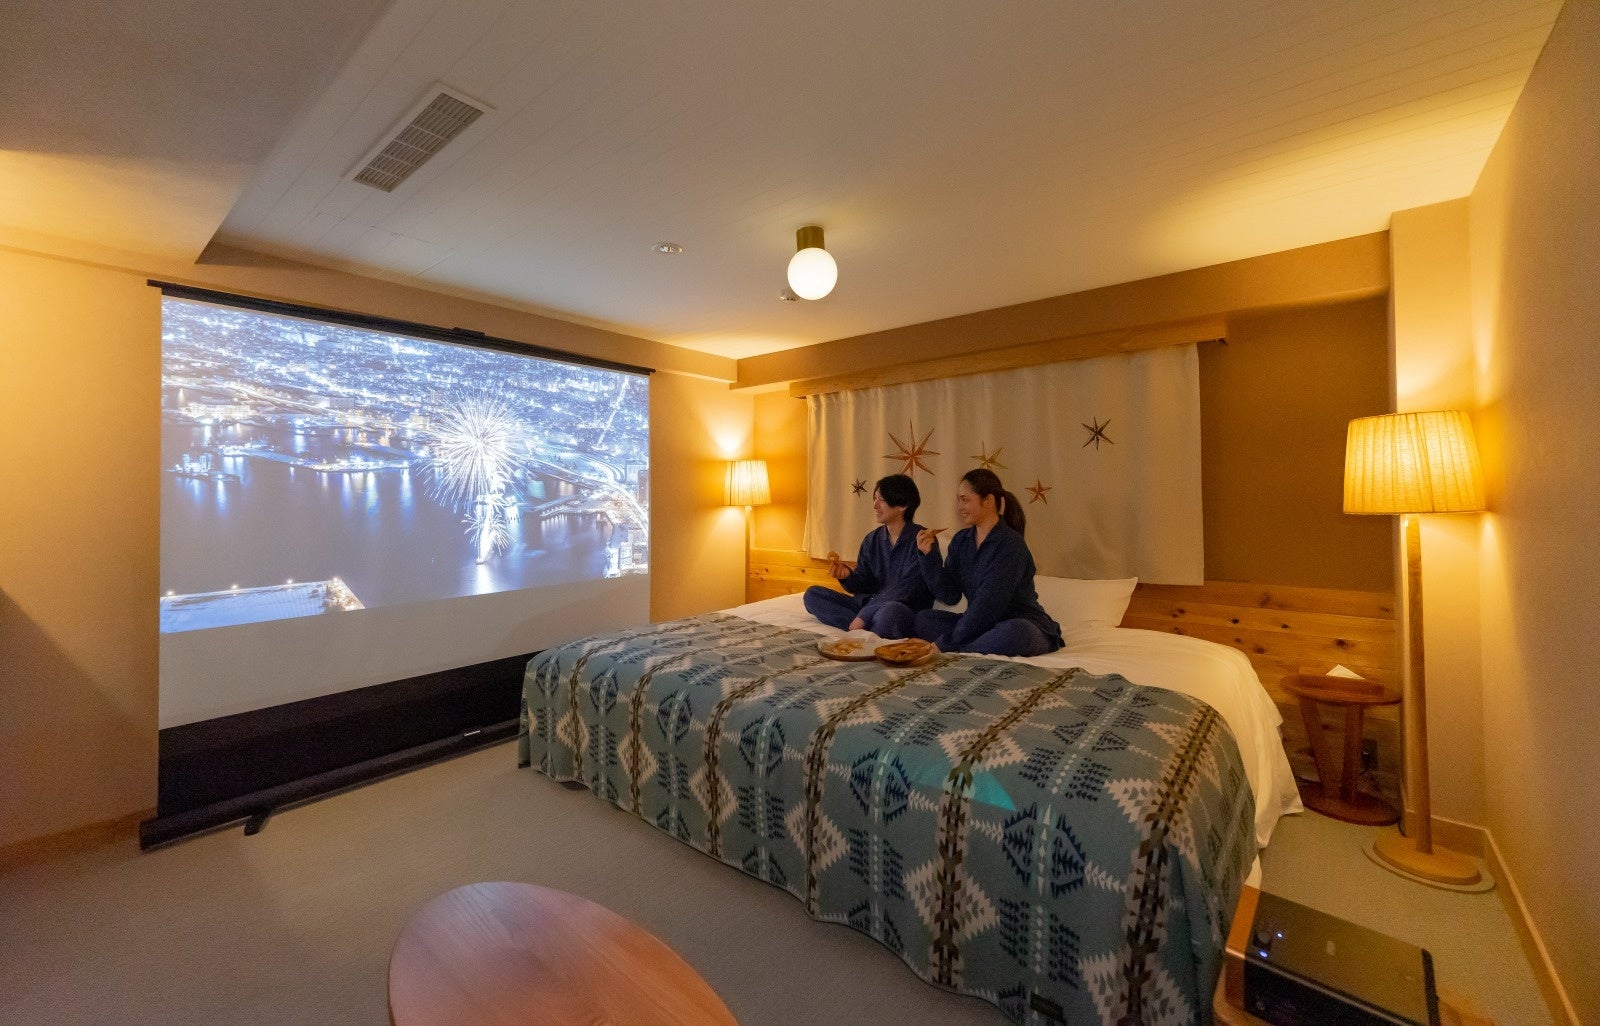 100 インチスクリーンの大画面で楽しむプライベートシアター。2022年3月3日(木)から6室限定で“シアタールーム”が「UNWIND HOTEL&BAR 札幌」に新登場!